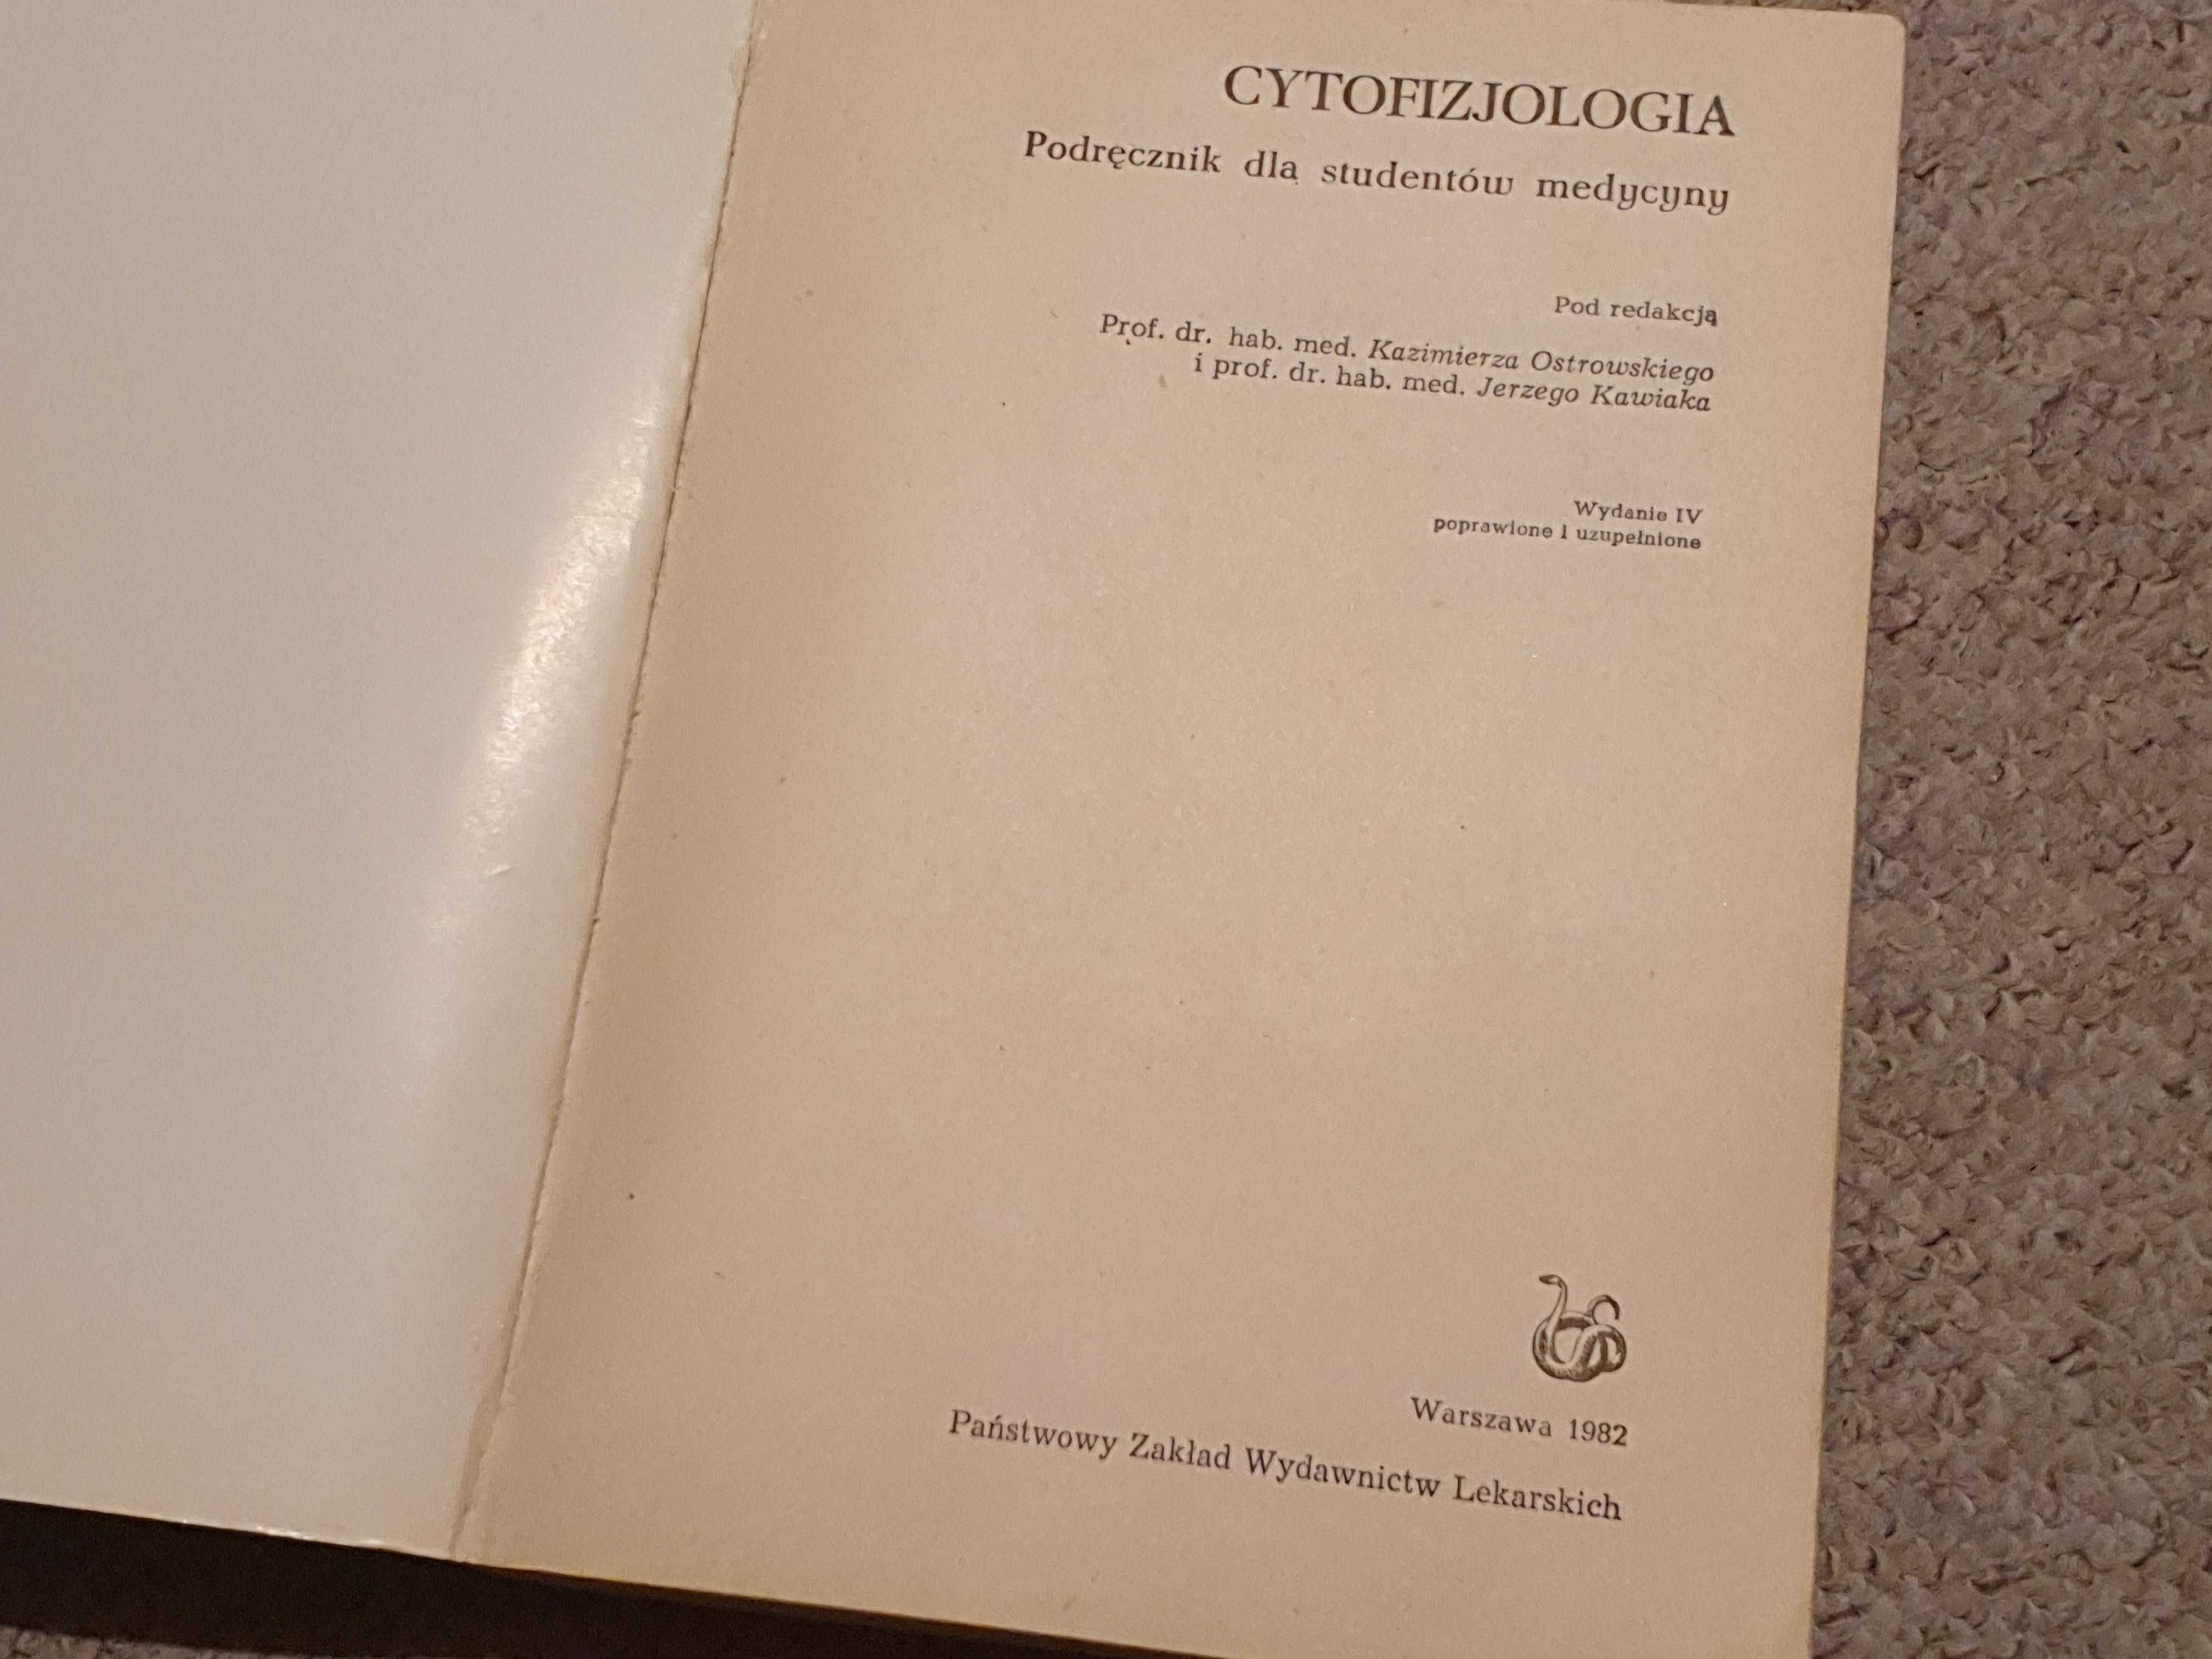 Cytofizjologia. Podręcznik dla studentów medycyny.